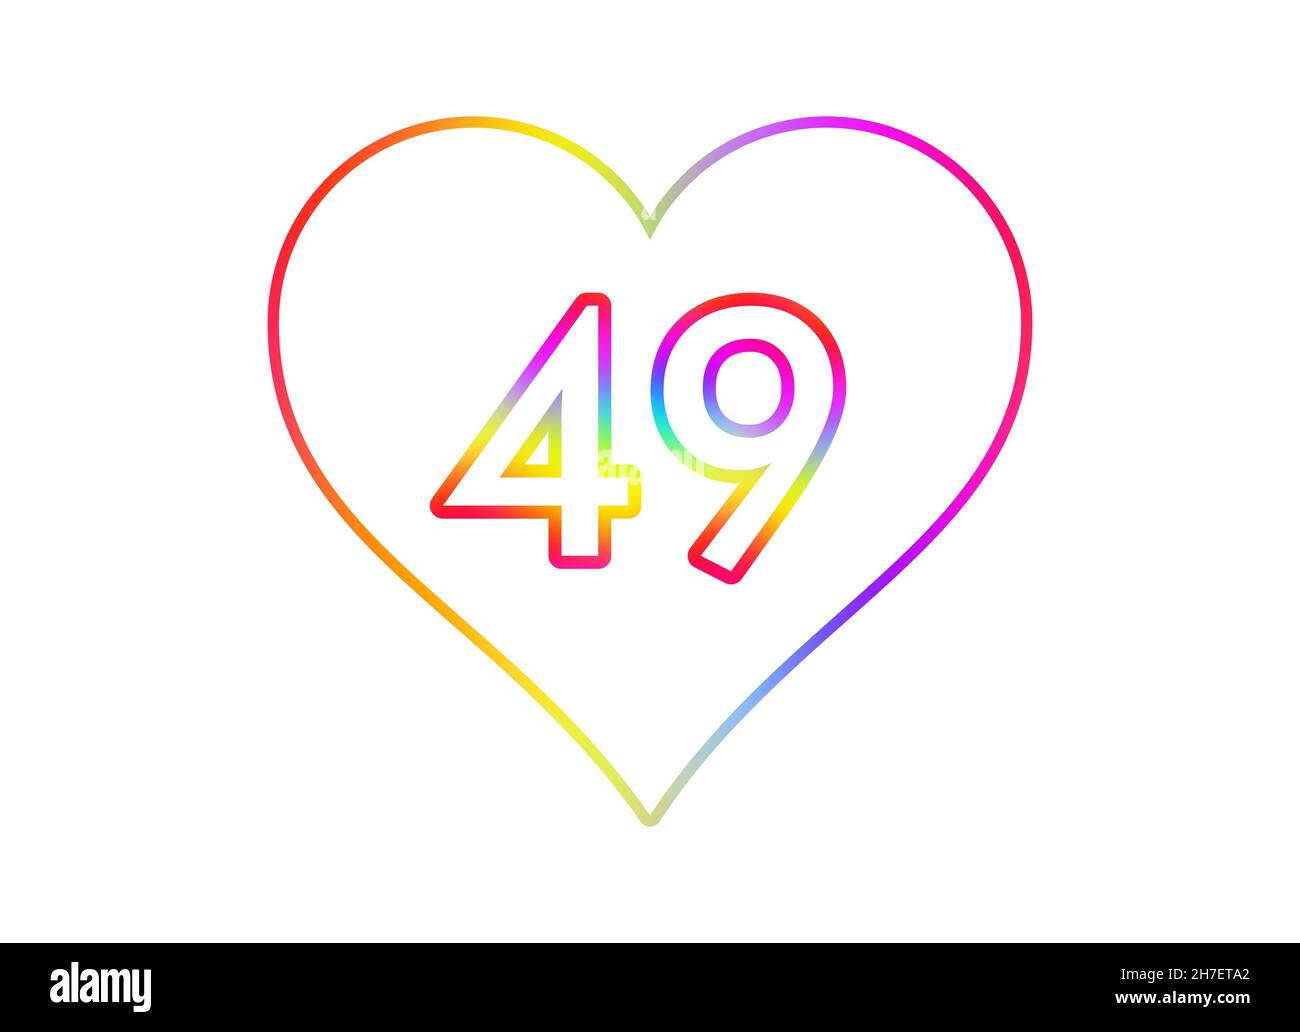 Nummer 49 in ein weißes Herz mit Regenbogenfarben umrandet. Stockfoto